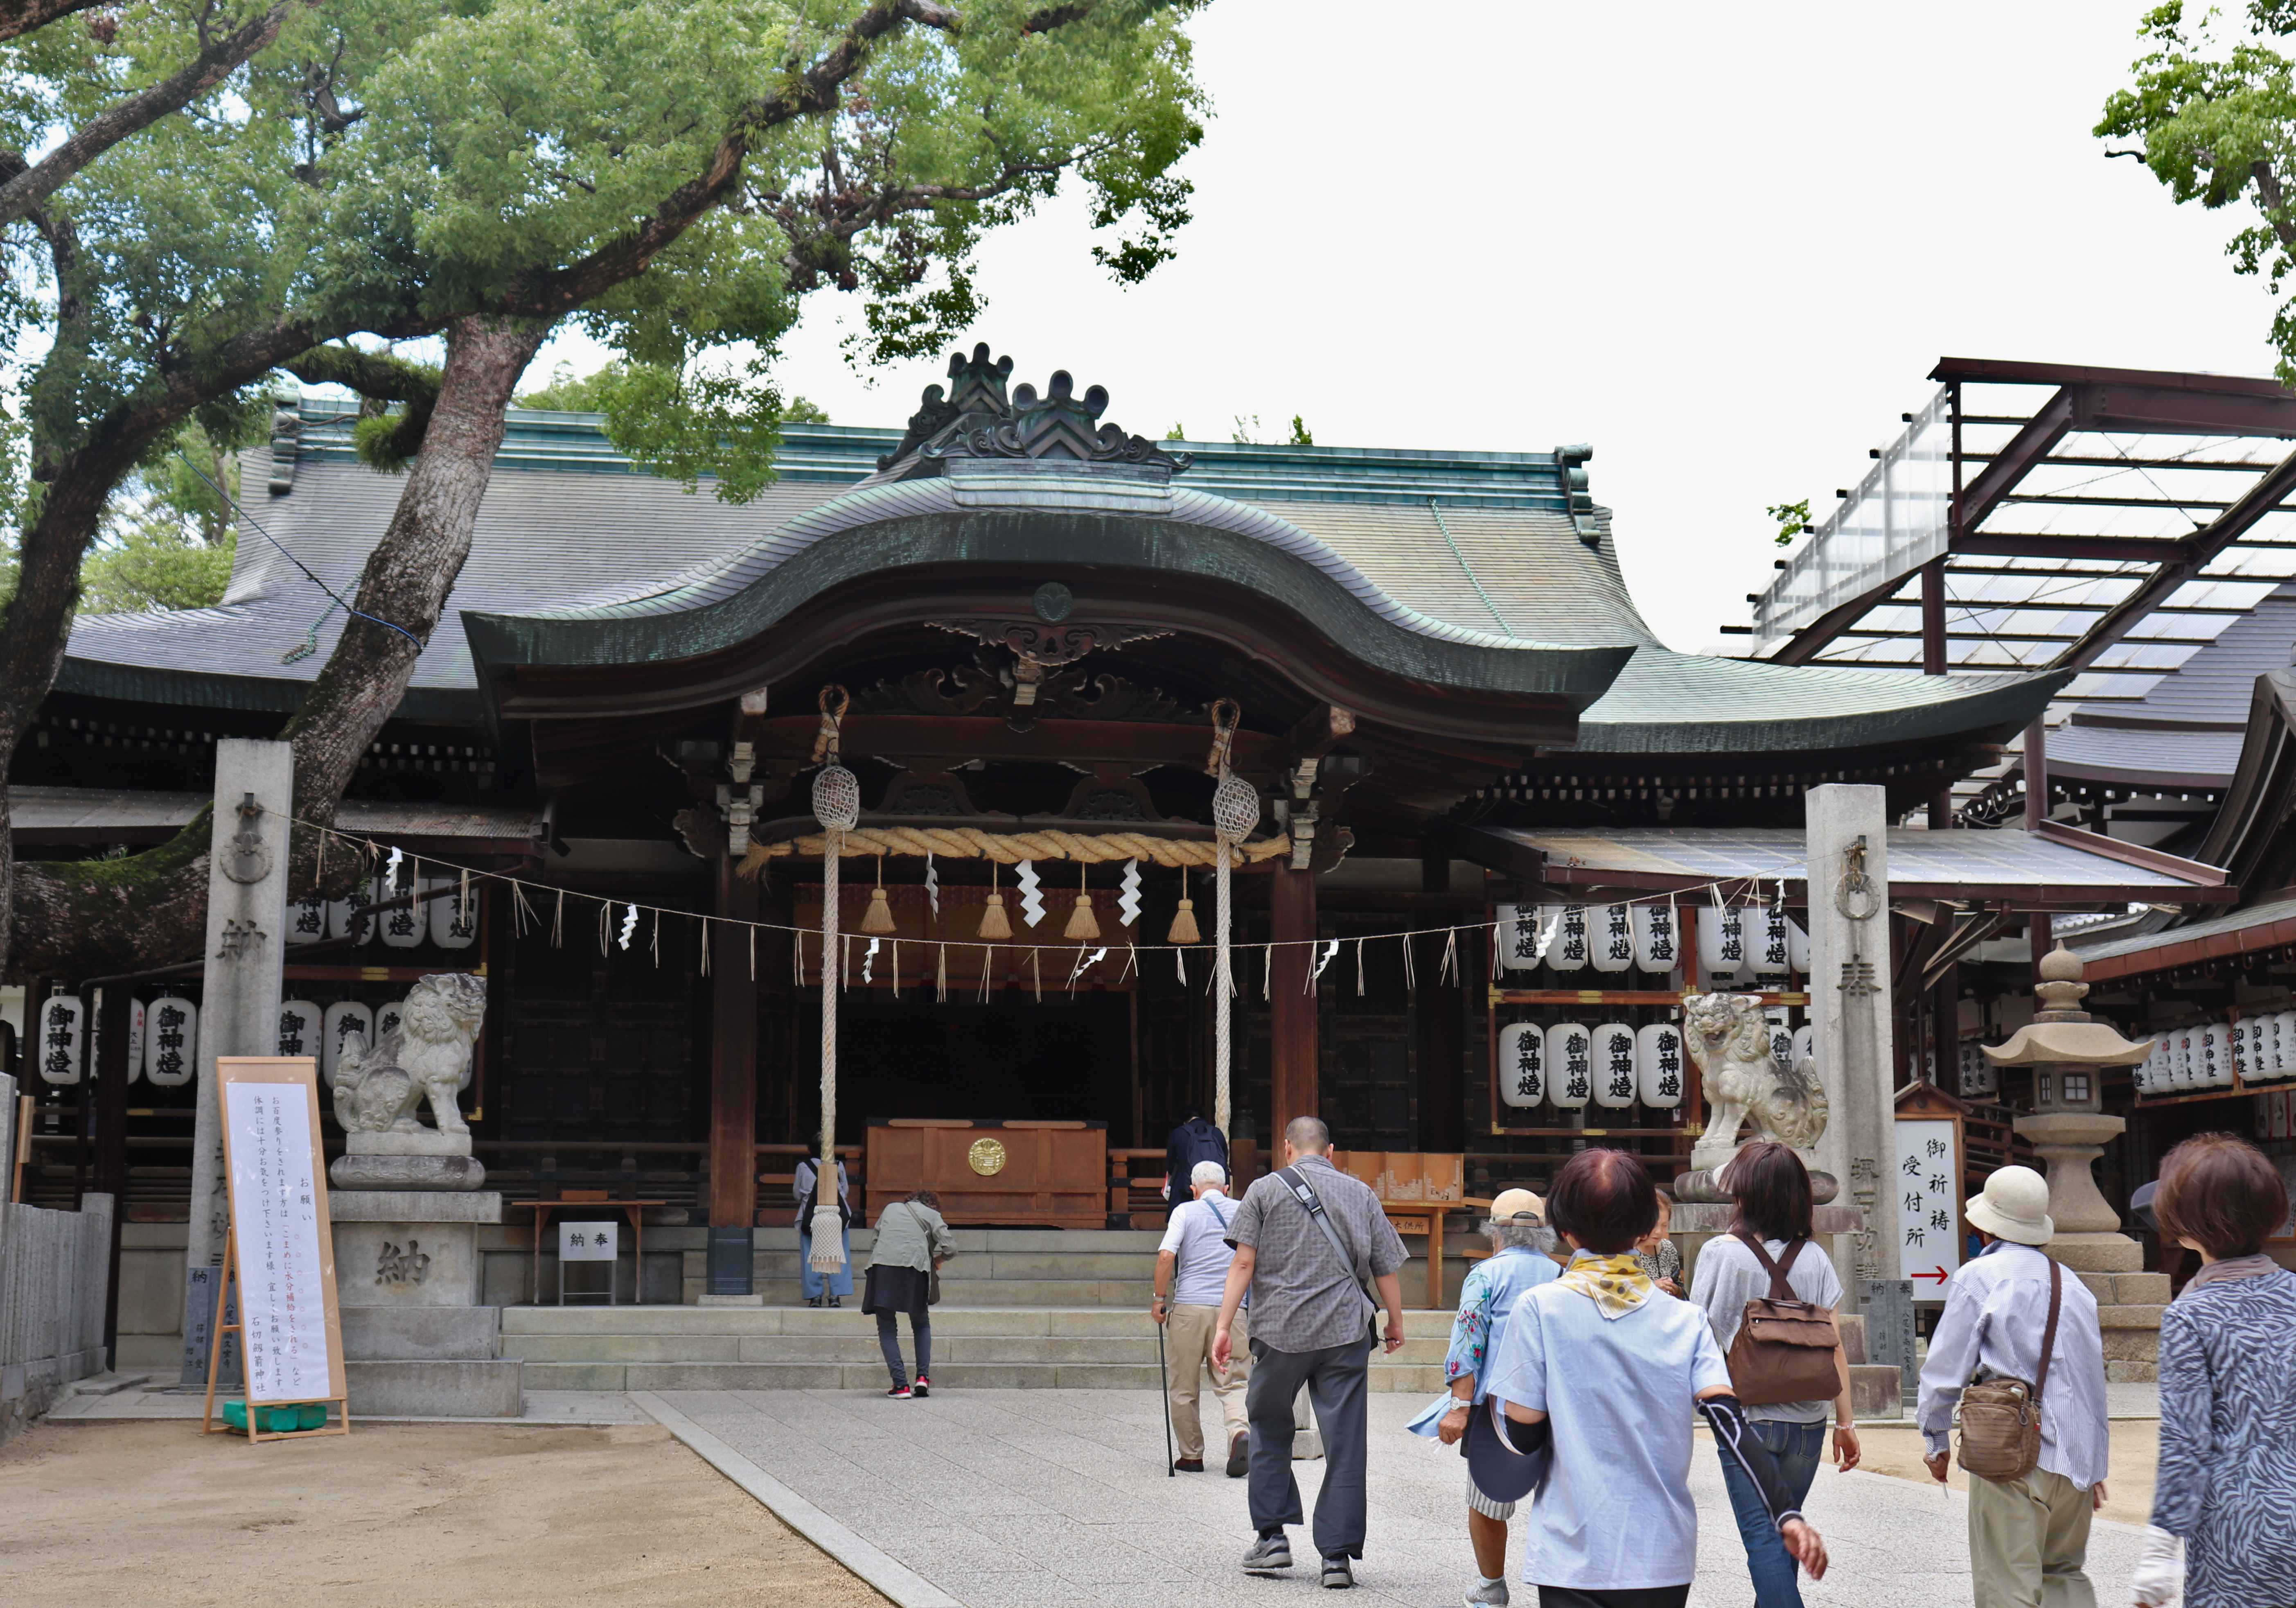 main shrine building of Ishikiri Shrine